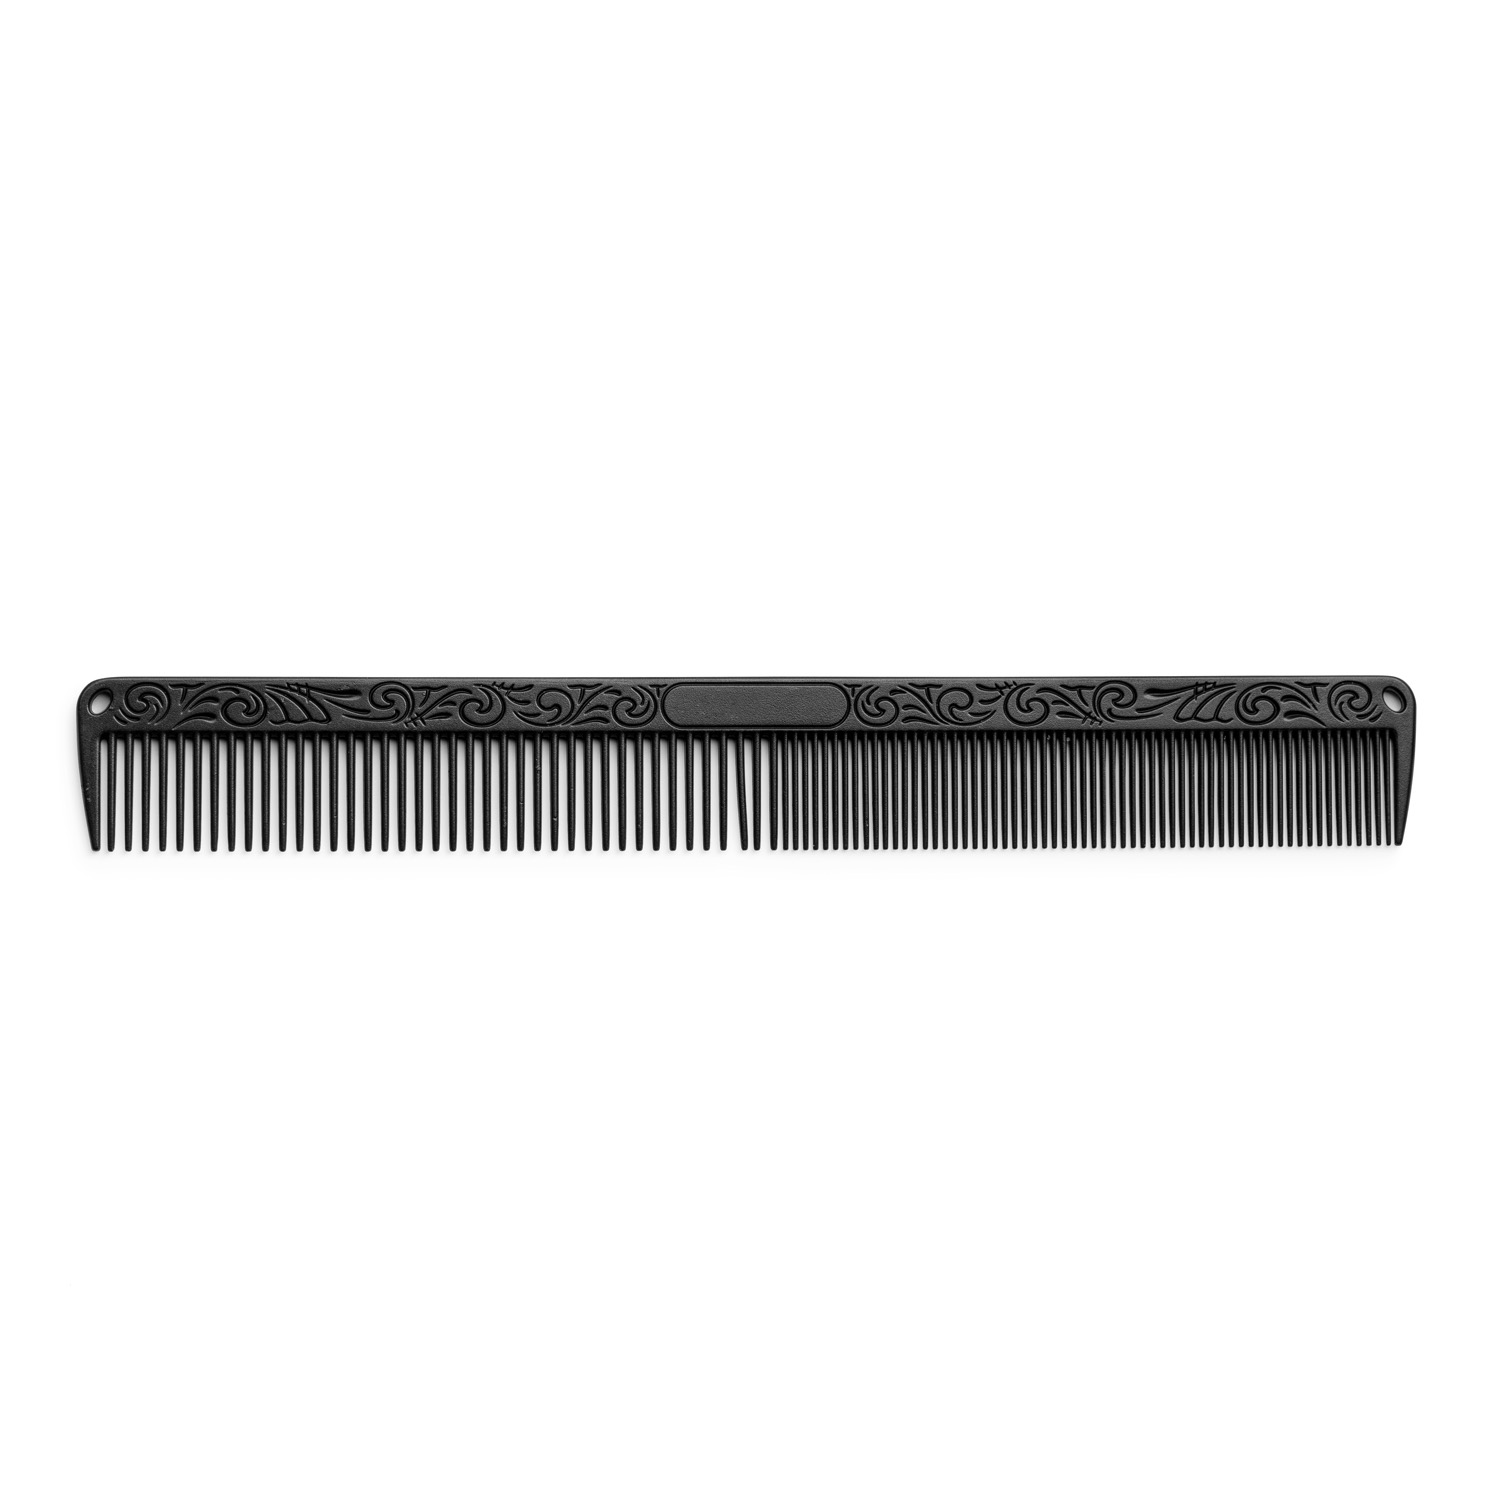 Aluminium comb black 7157 - hliníkový hrebeň, čierny